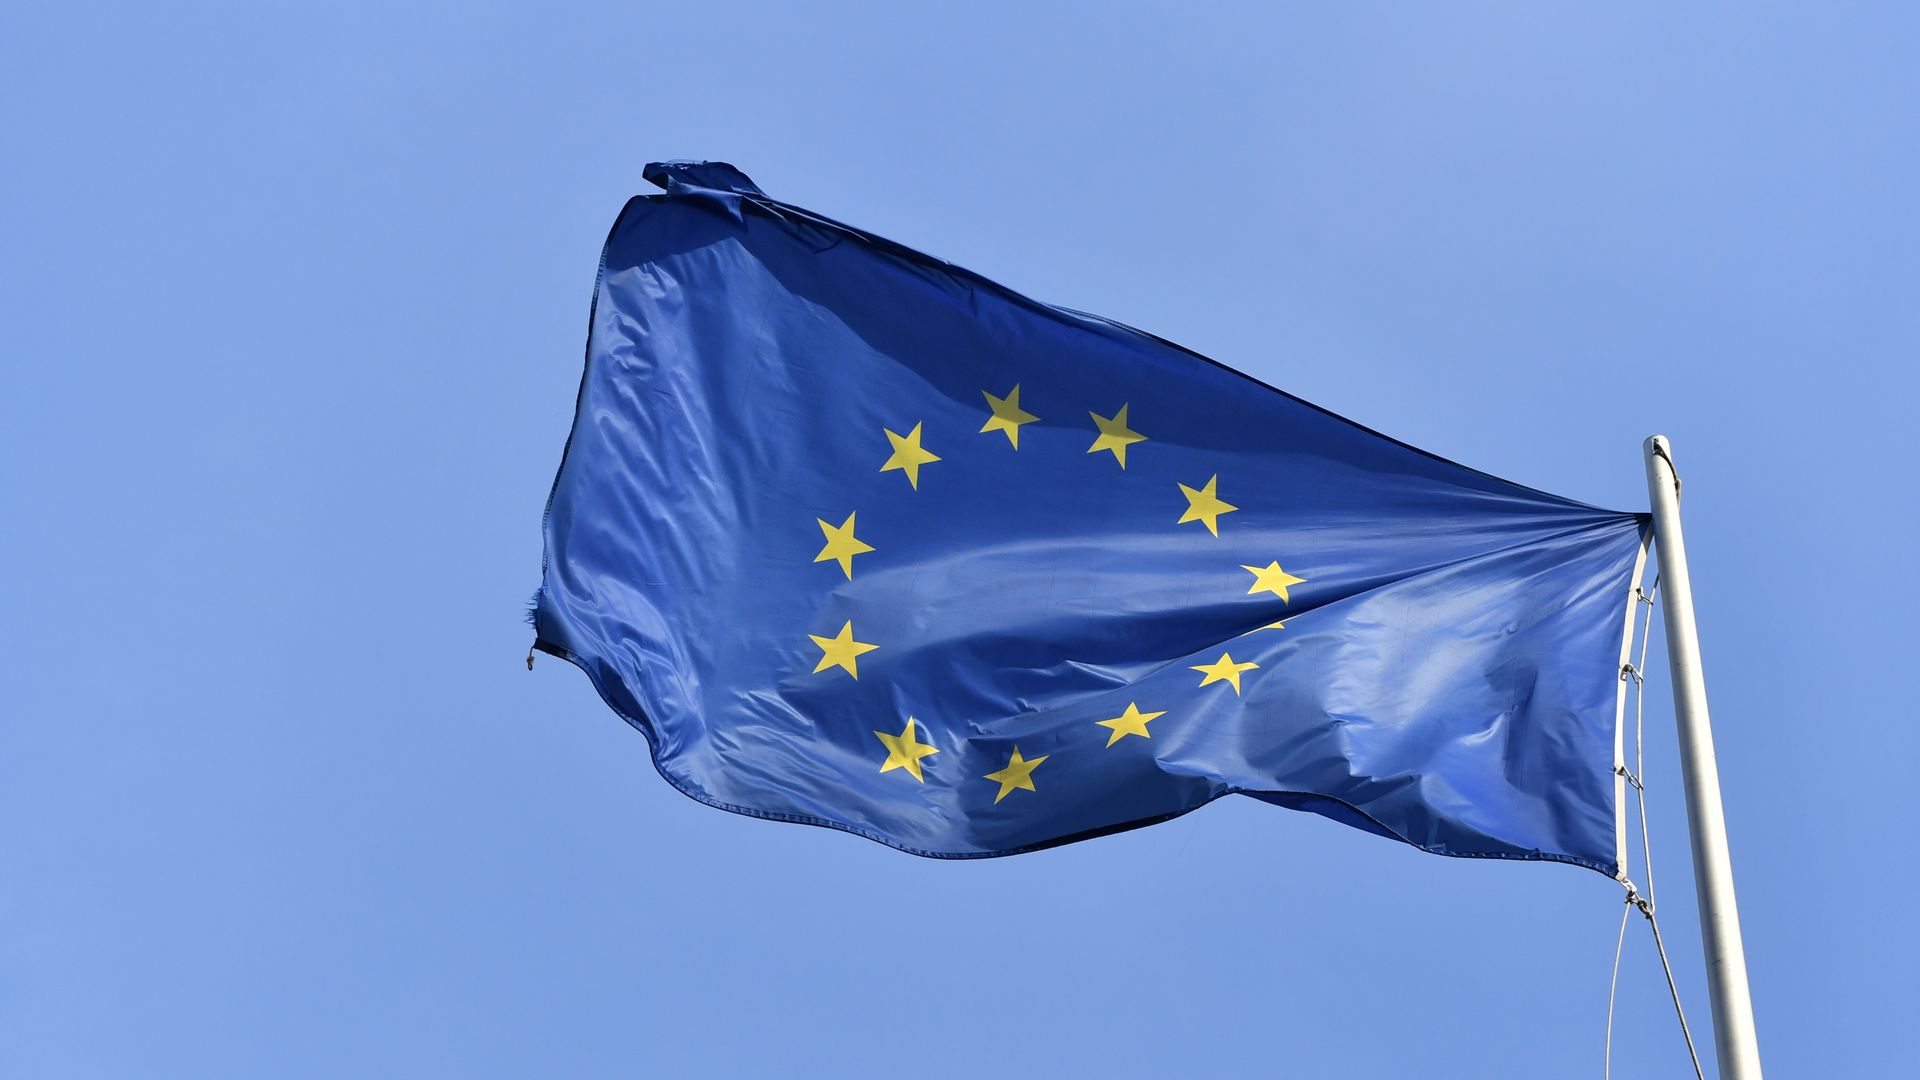 A European flag waving